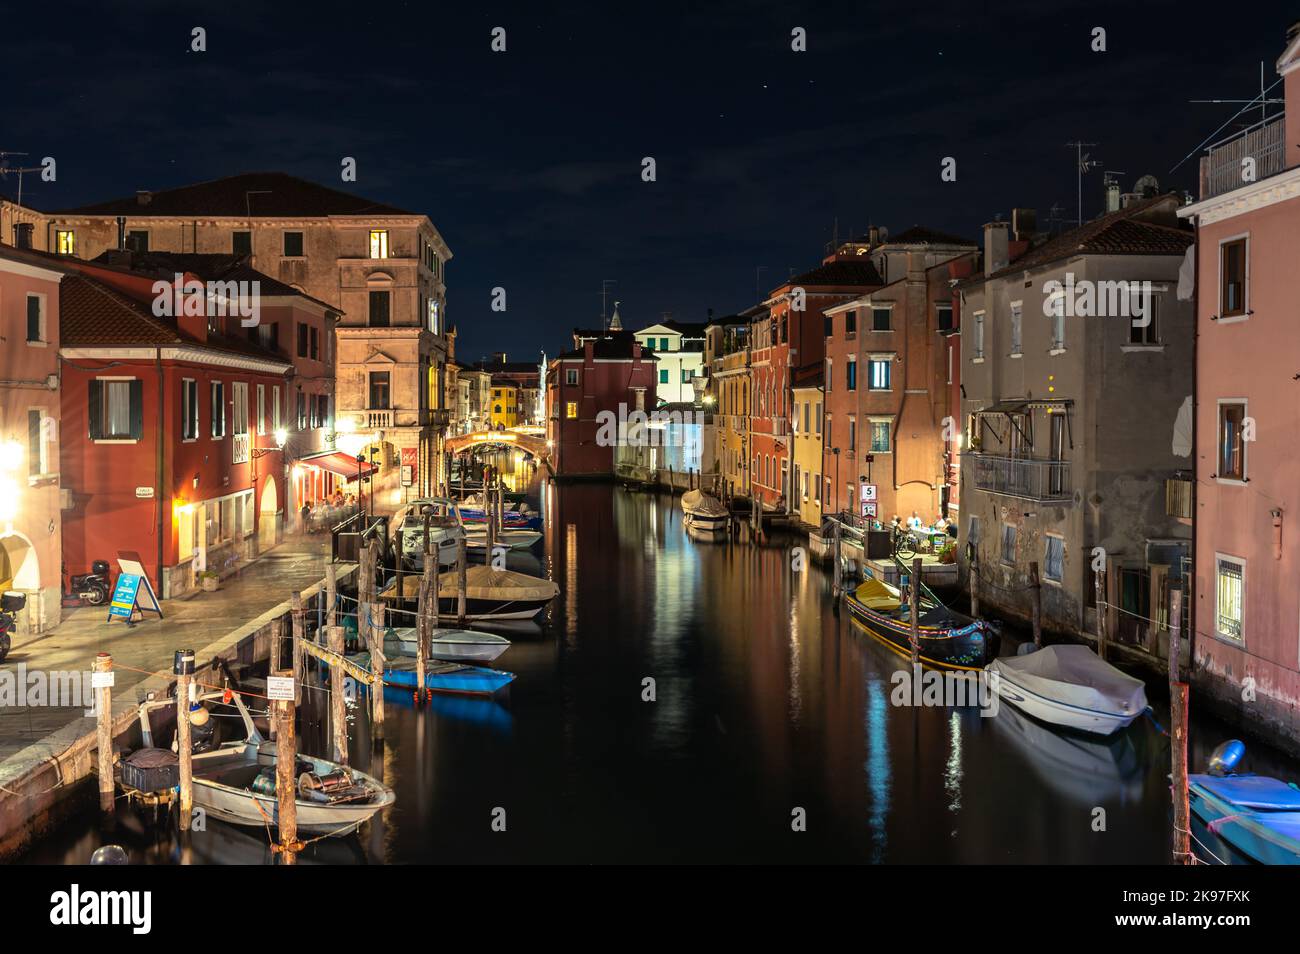 Allgemeiner Blick auf die Kanäle von Chioogia (Spitzname „Klein-Venedig“) mit den Booten und Gebäuden, die sich in der Dämmerung im Wasser unter dem künstlichen Licht spiegeln. Chioggia, eine Stadt in der venezianischen Lagune, die viele Touristen beherbergt, die Venedig besuchen, wurde nicht in den venezianischen Stadtkern aufgenommen. Touristen, die dort bleiben, müssen die Steuer jedes Mal zahlen, wenn sie Venedig ab dem 16. Januar 2023 besuchen. Stockfoto